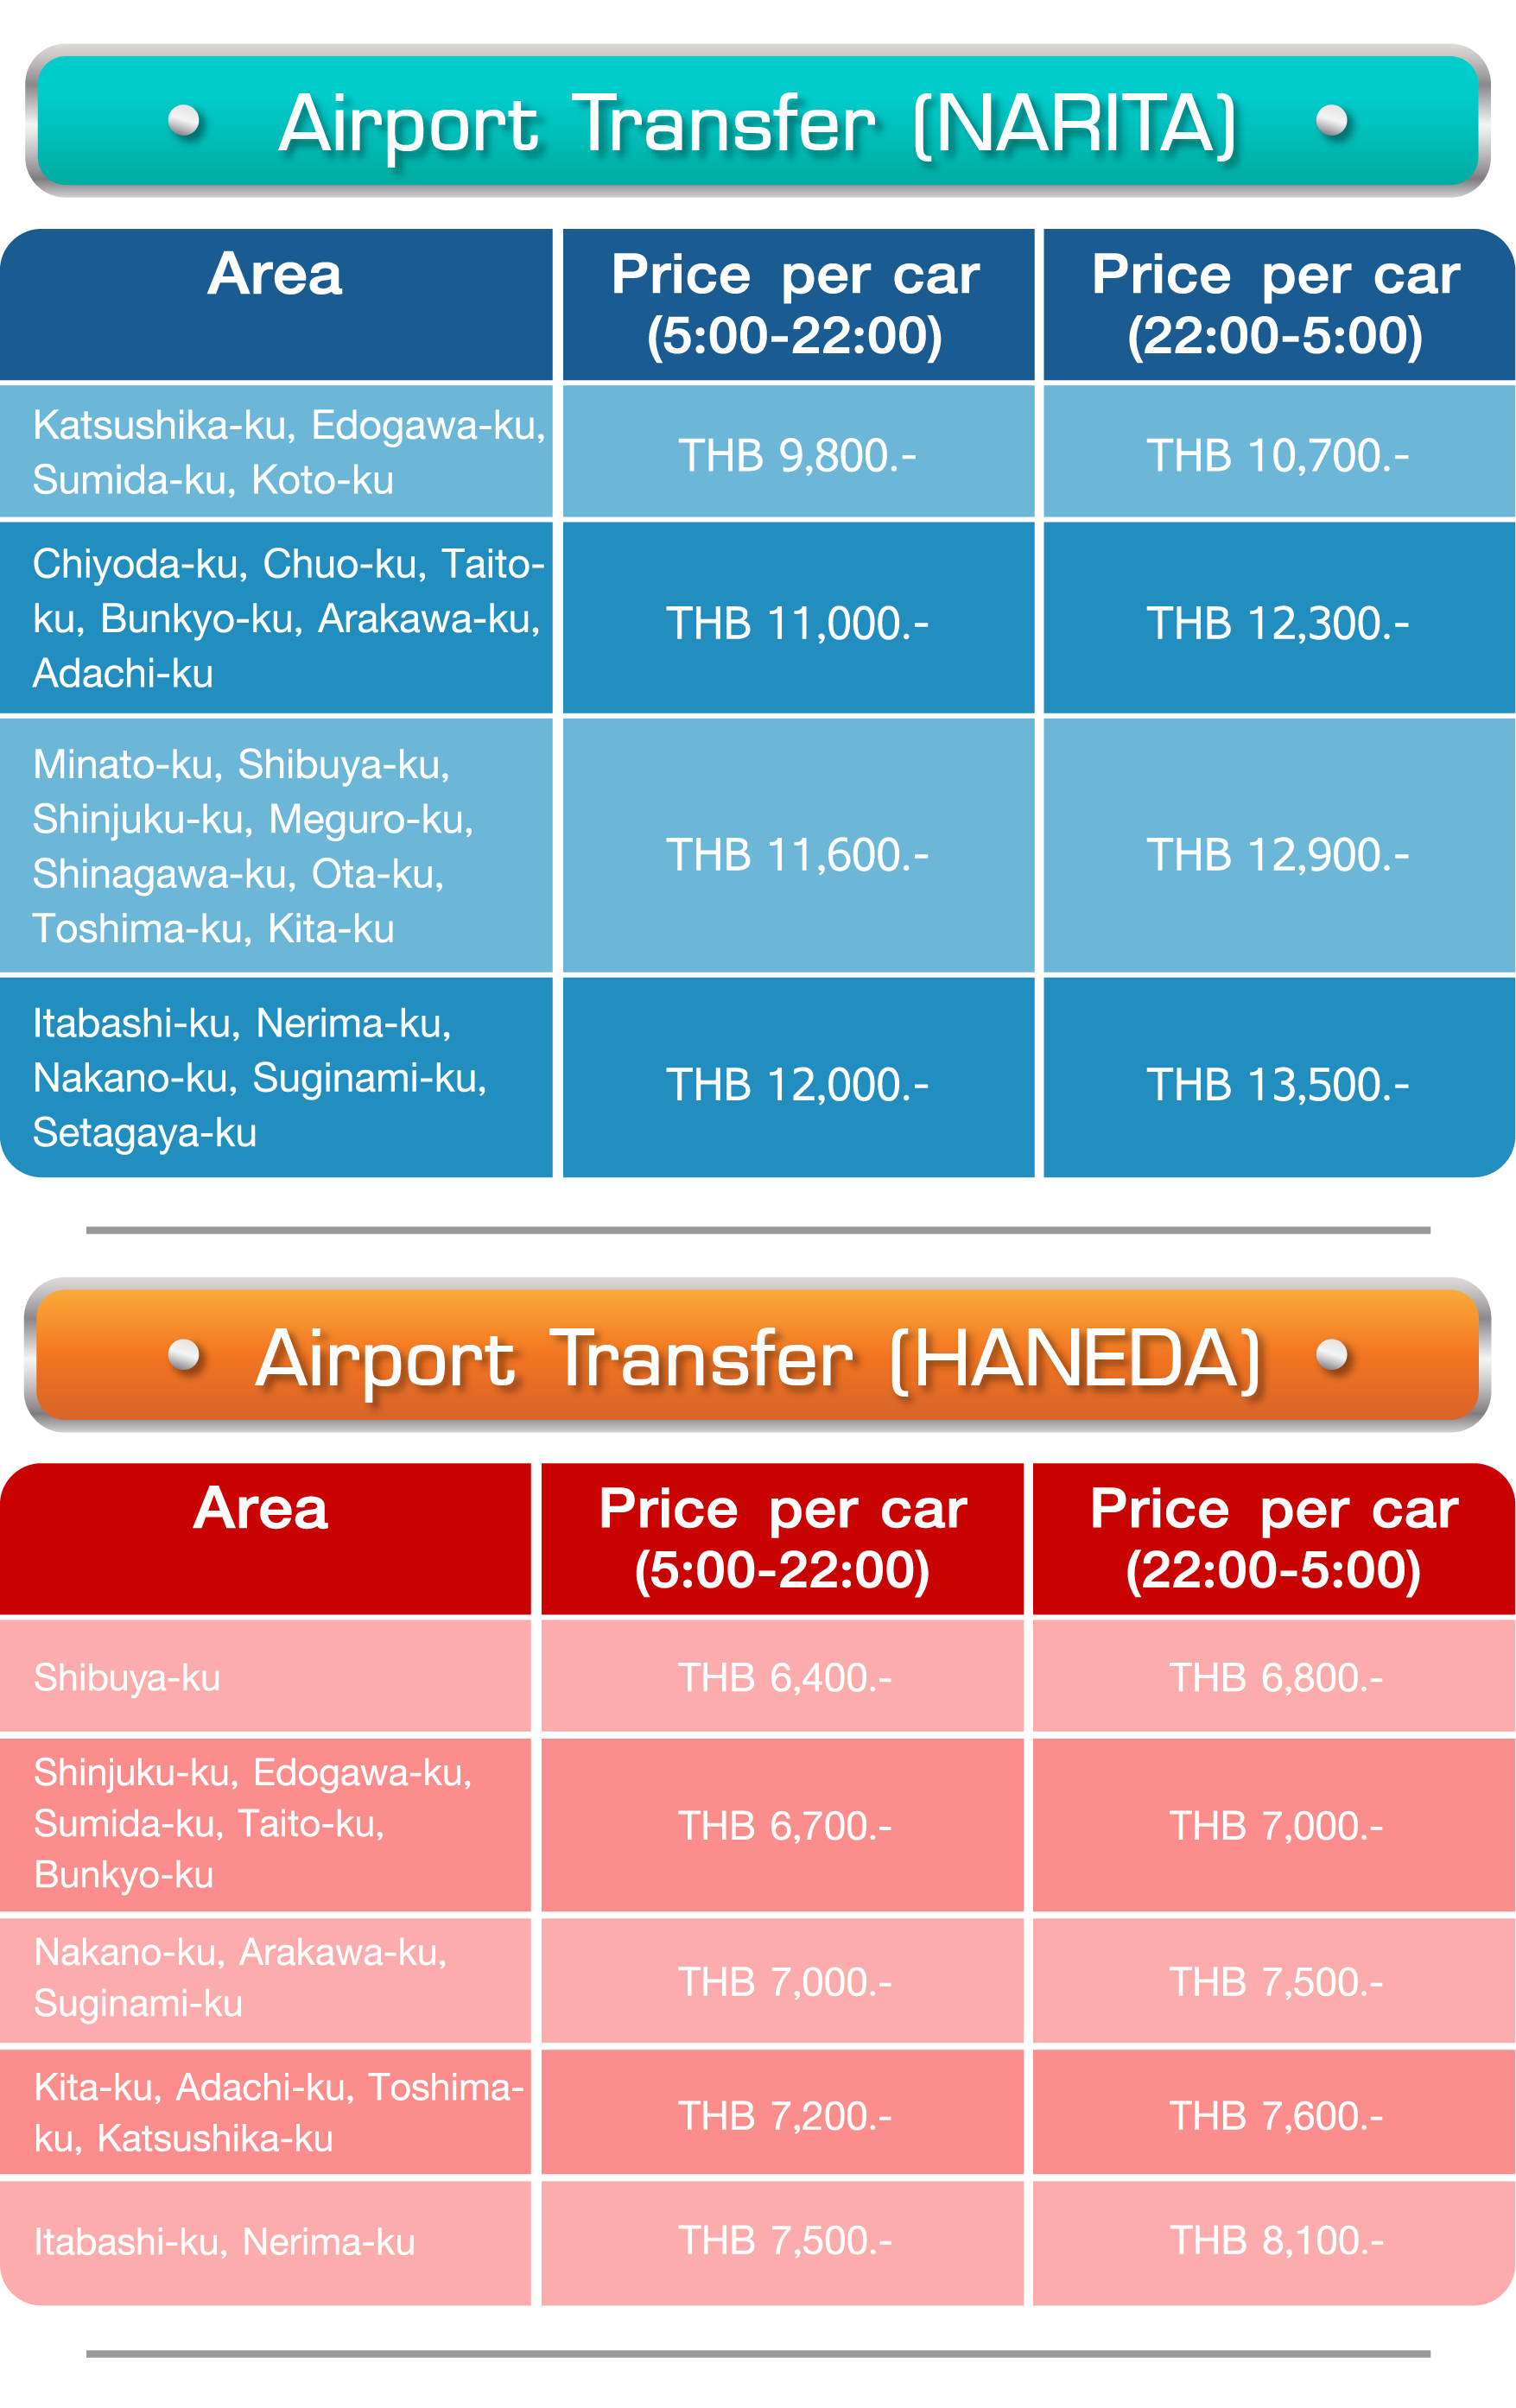 ความสะดวกสบายภายในรถ, Private Airport Transfer, โปรญี่ปุ่น, พื้นที่ให้บริการ, ค่าบริการ, Narita, Haneda